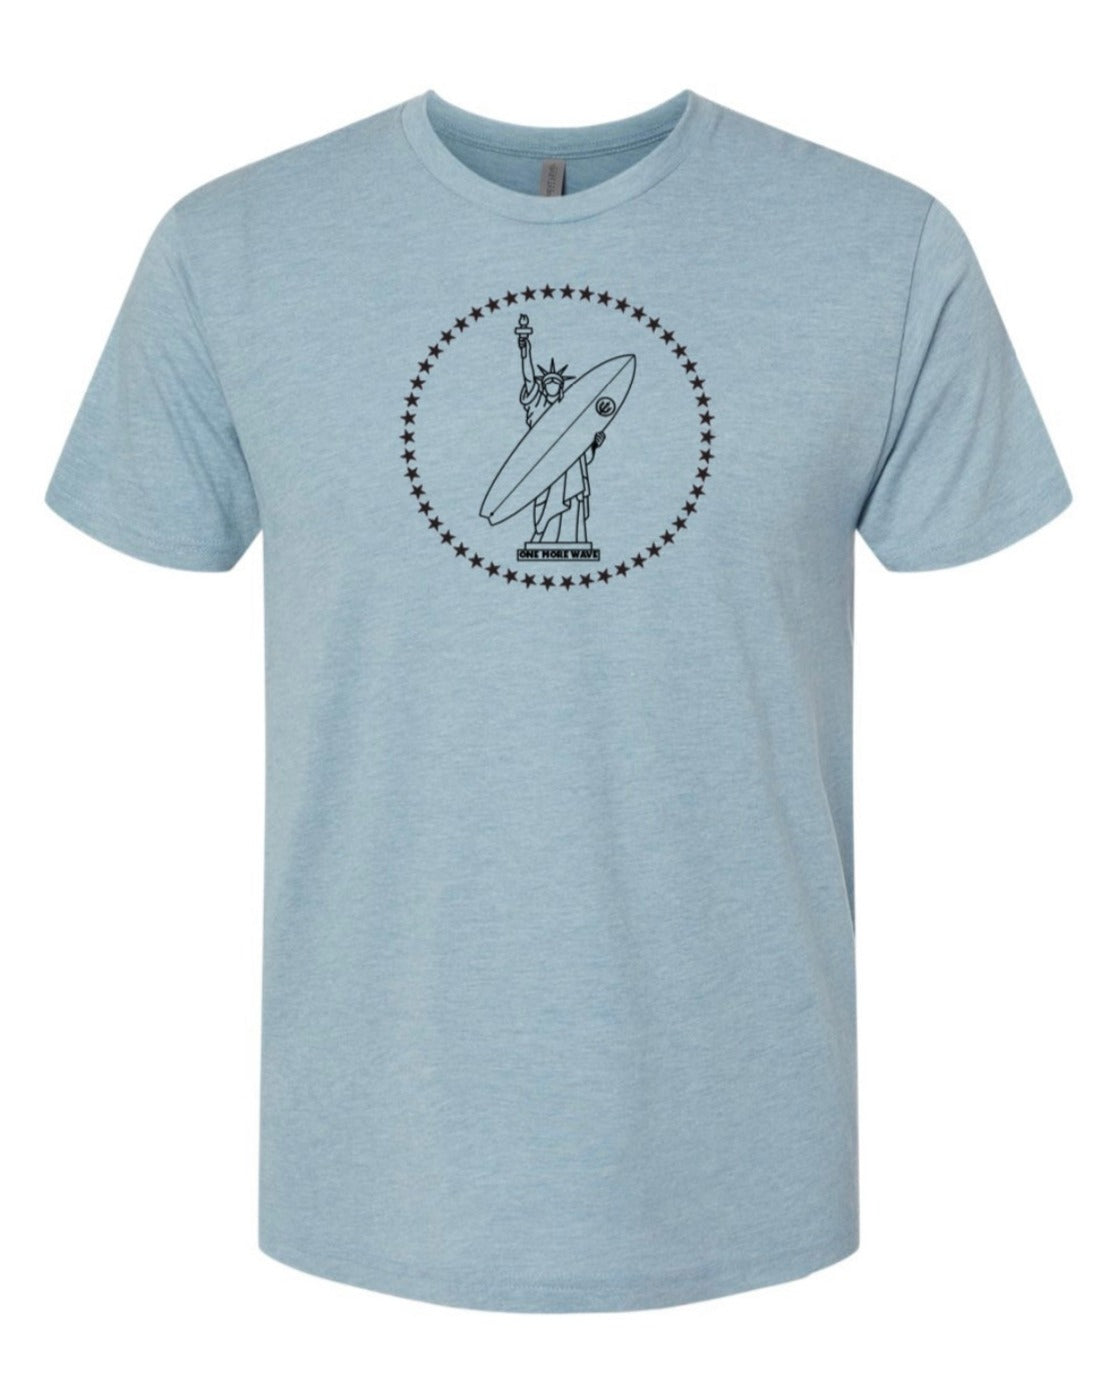 Lady Liberty Surf T-Shirt